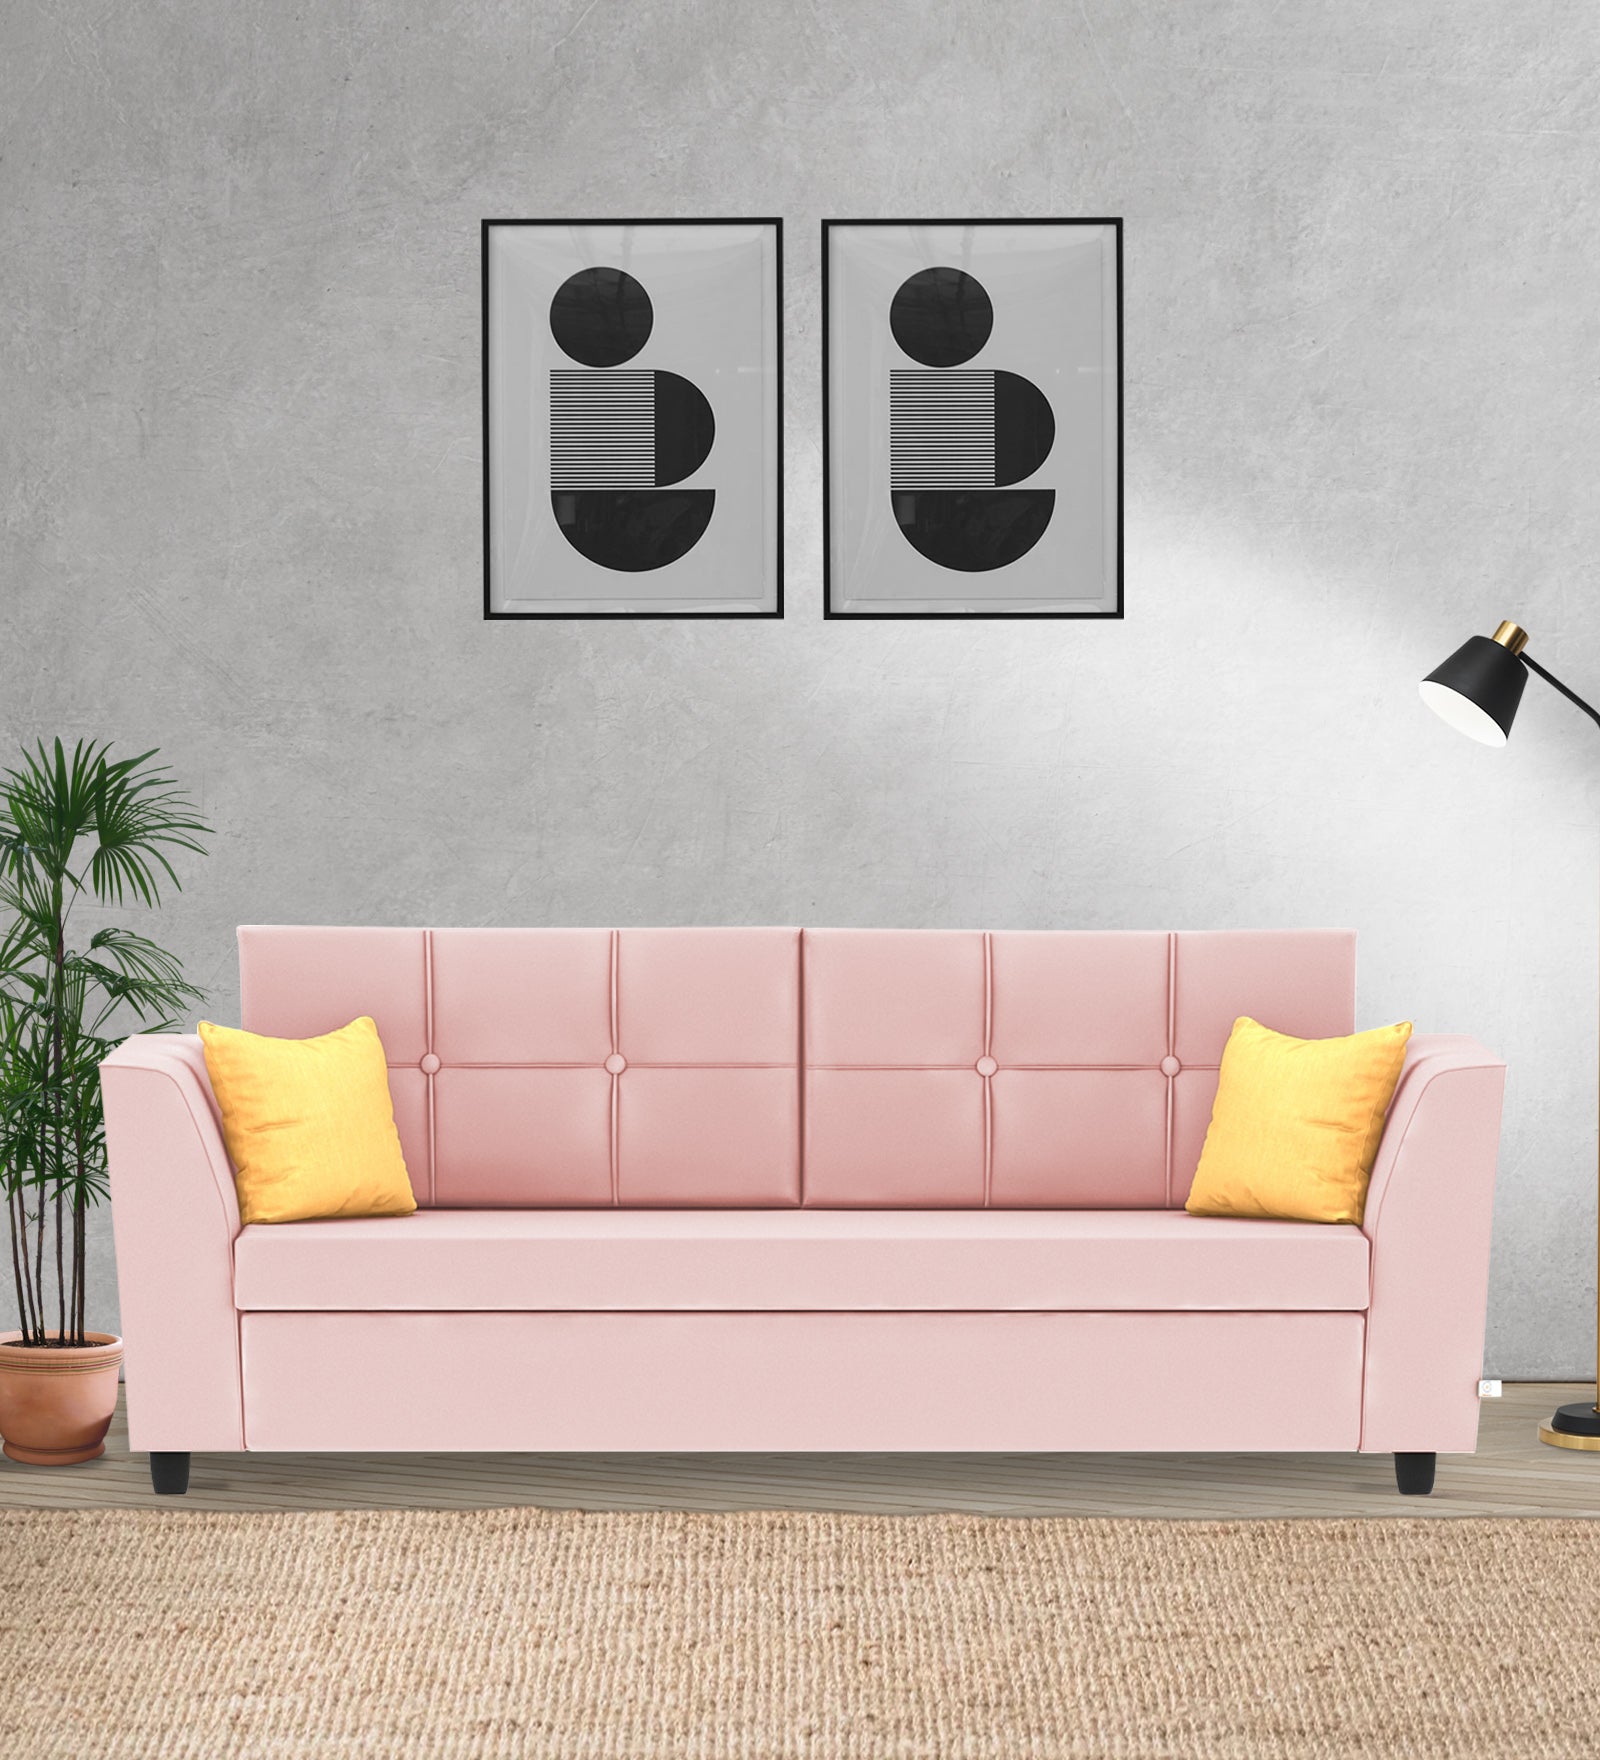 Nestin Velvet 3 Seater Sofa in Millennial Pink Colour